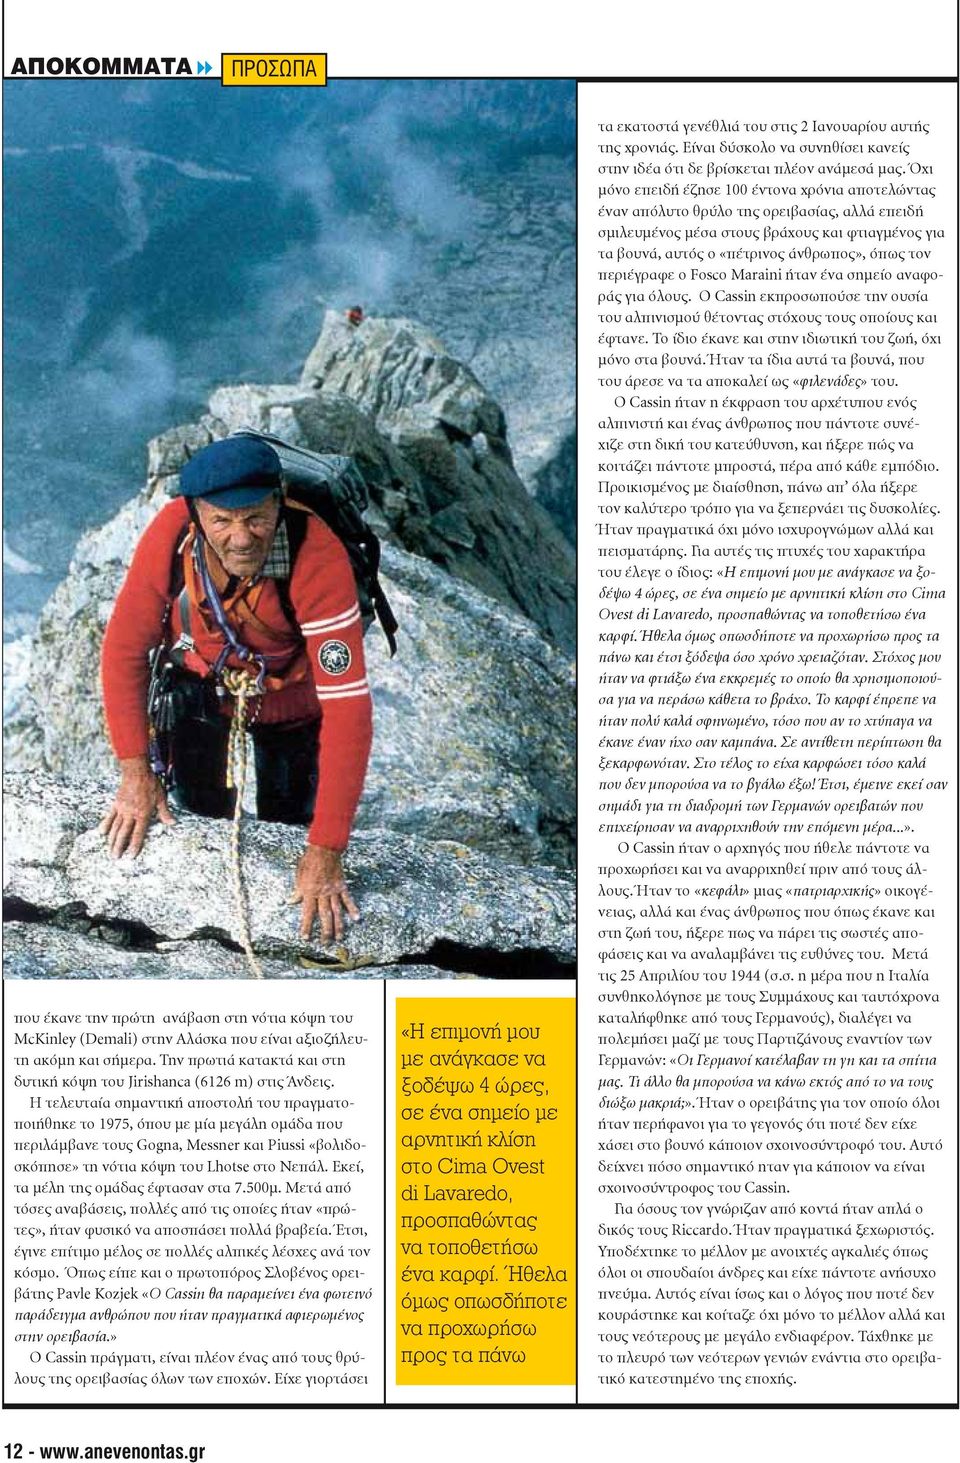 Η τελευταία σημαντική αποστολή του πραγματοποιήθηκε το 1975, όπου με μία μεγάλη ομάδα που περιλάμβανε τους Gogna, Messner και Piussi «βολιδοσκόπησε» τη νότια κόψη του Lhotse στο Νεπάλ.